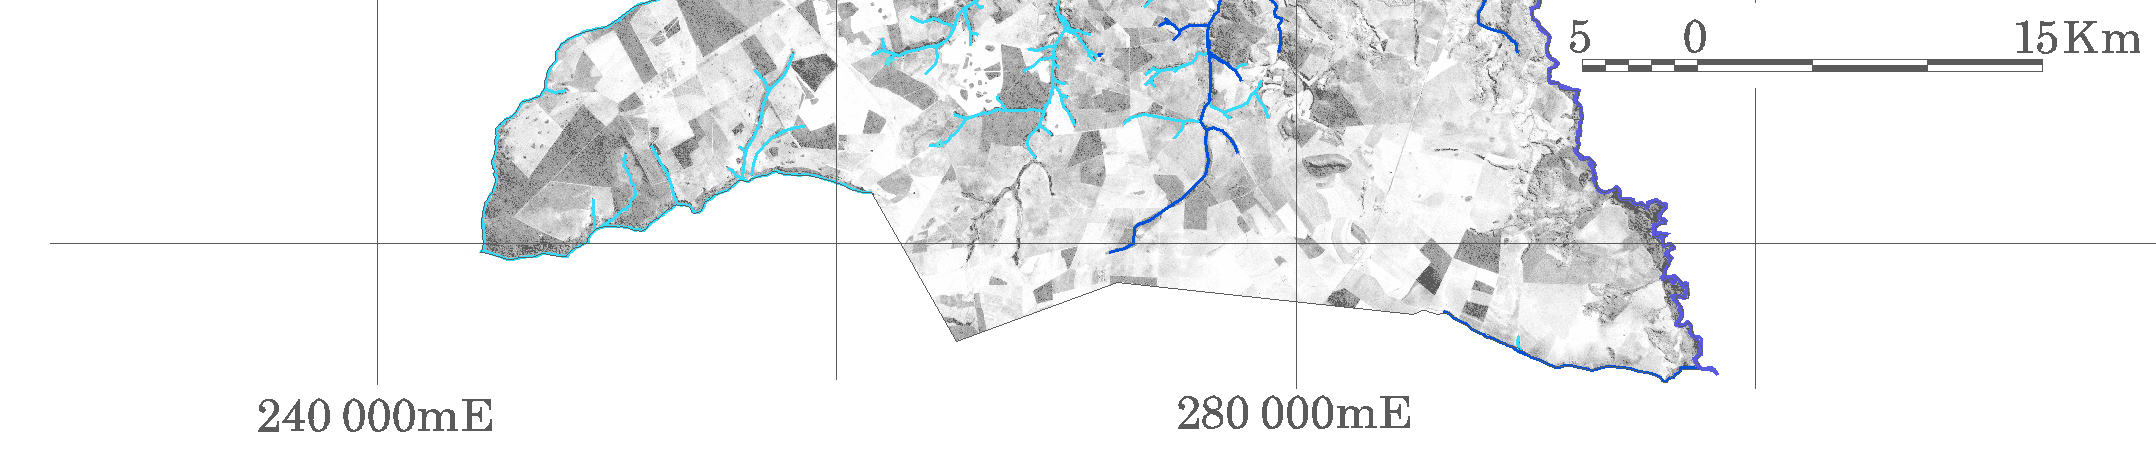 21 Figura 4.3 - Hidrografia de Costa Rica em azul, vetorializada sobre uma banda pancromática LANDSAT, com resolução espacial de 15m, ao fundo.